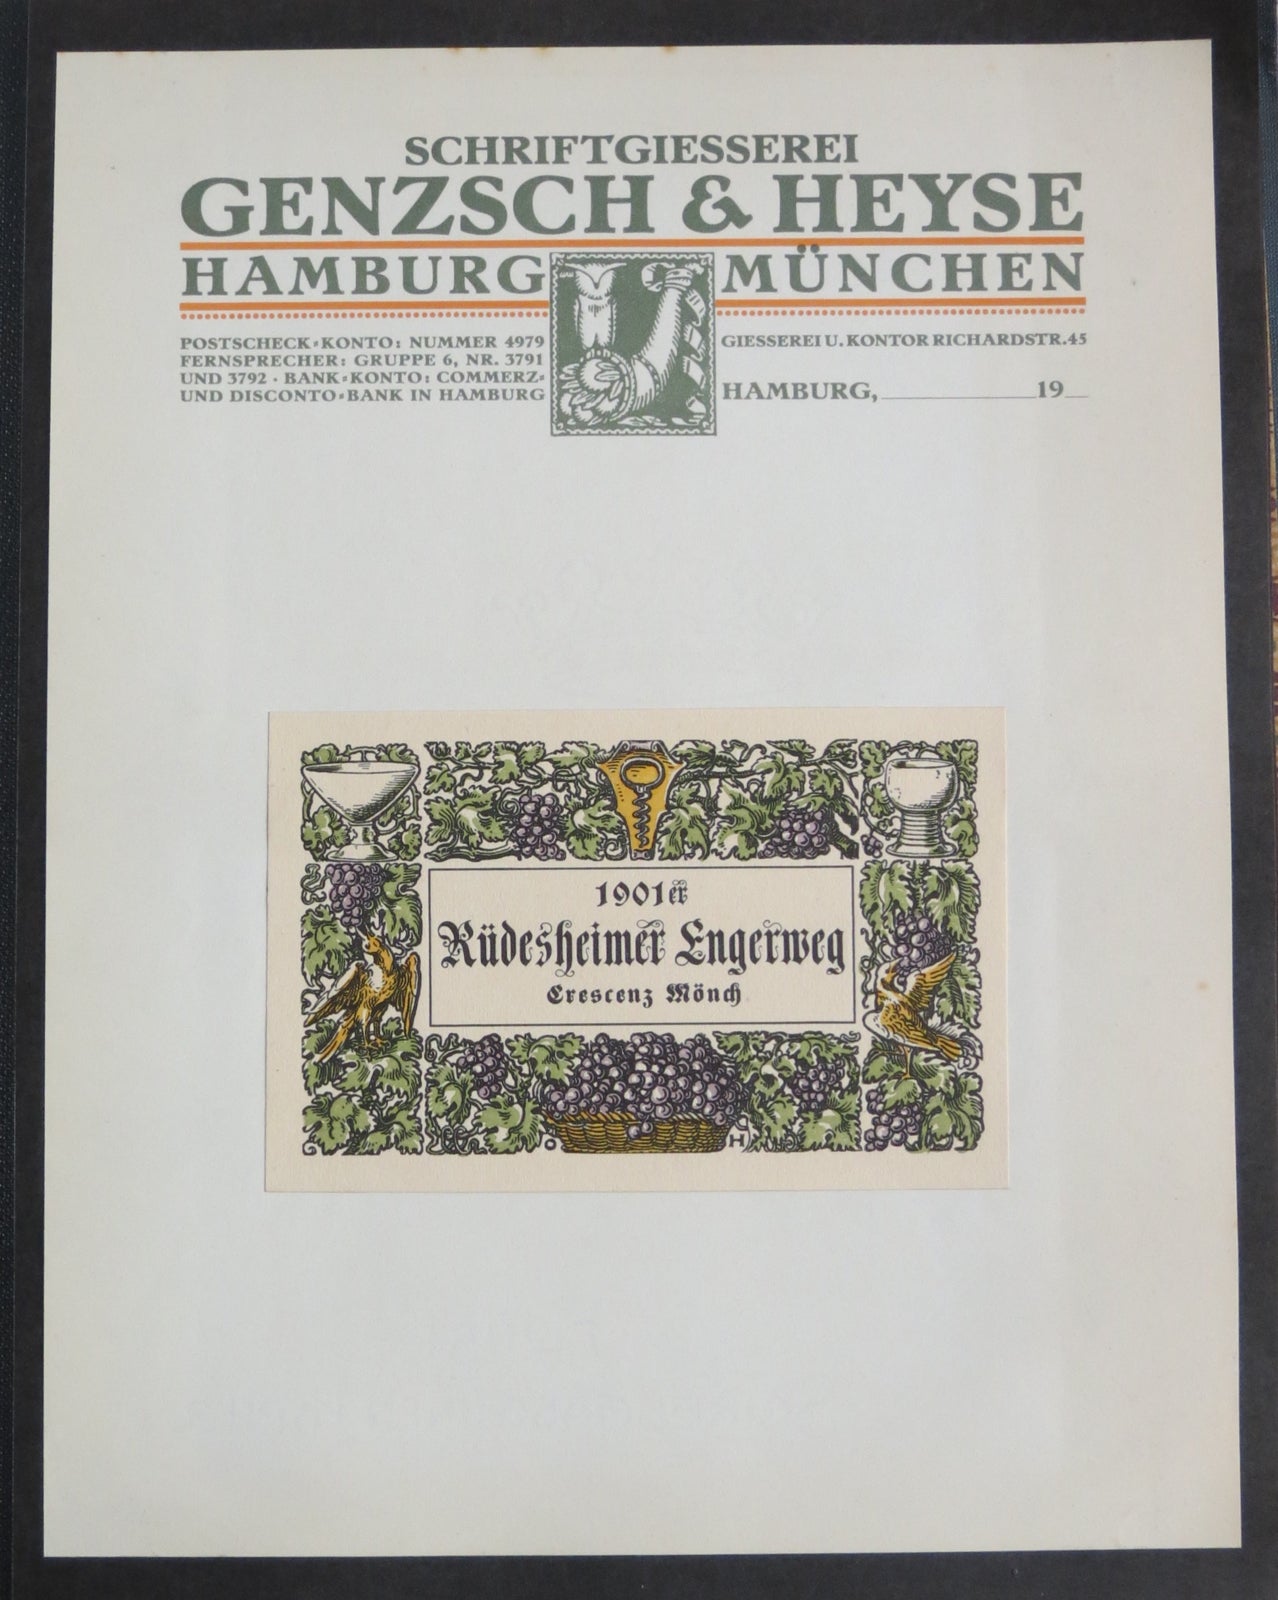 Album of typographic specimens. Genzsch, Henze Schriftgiesserei.